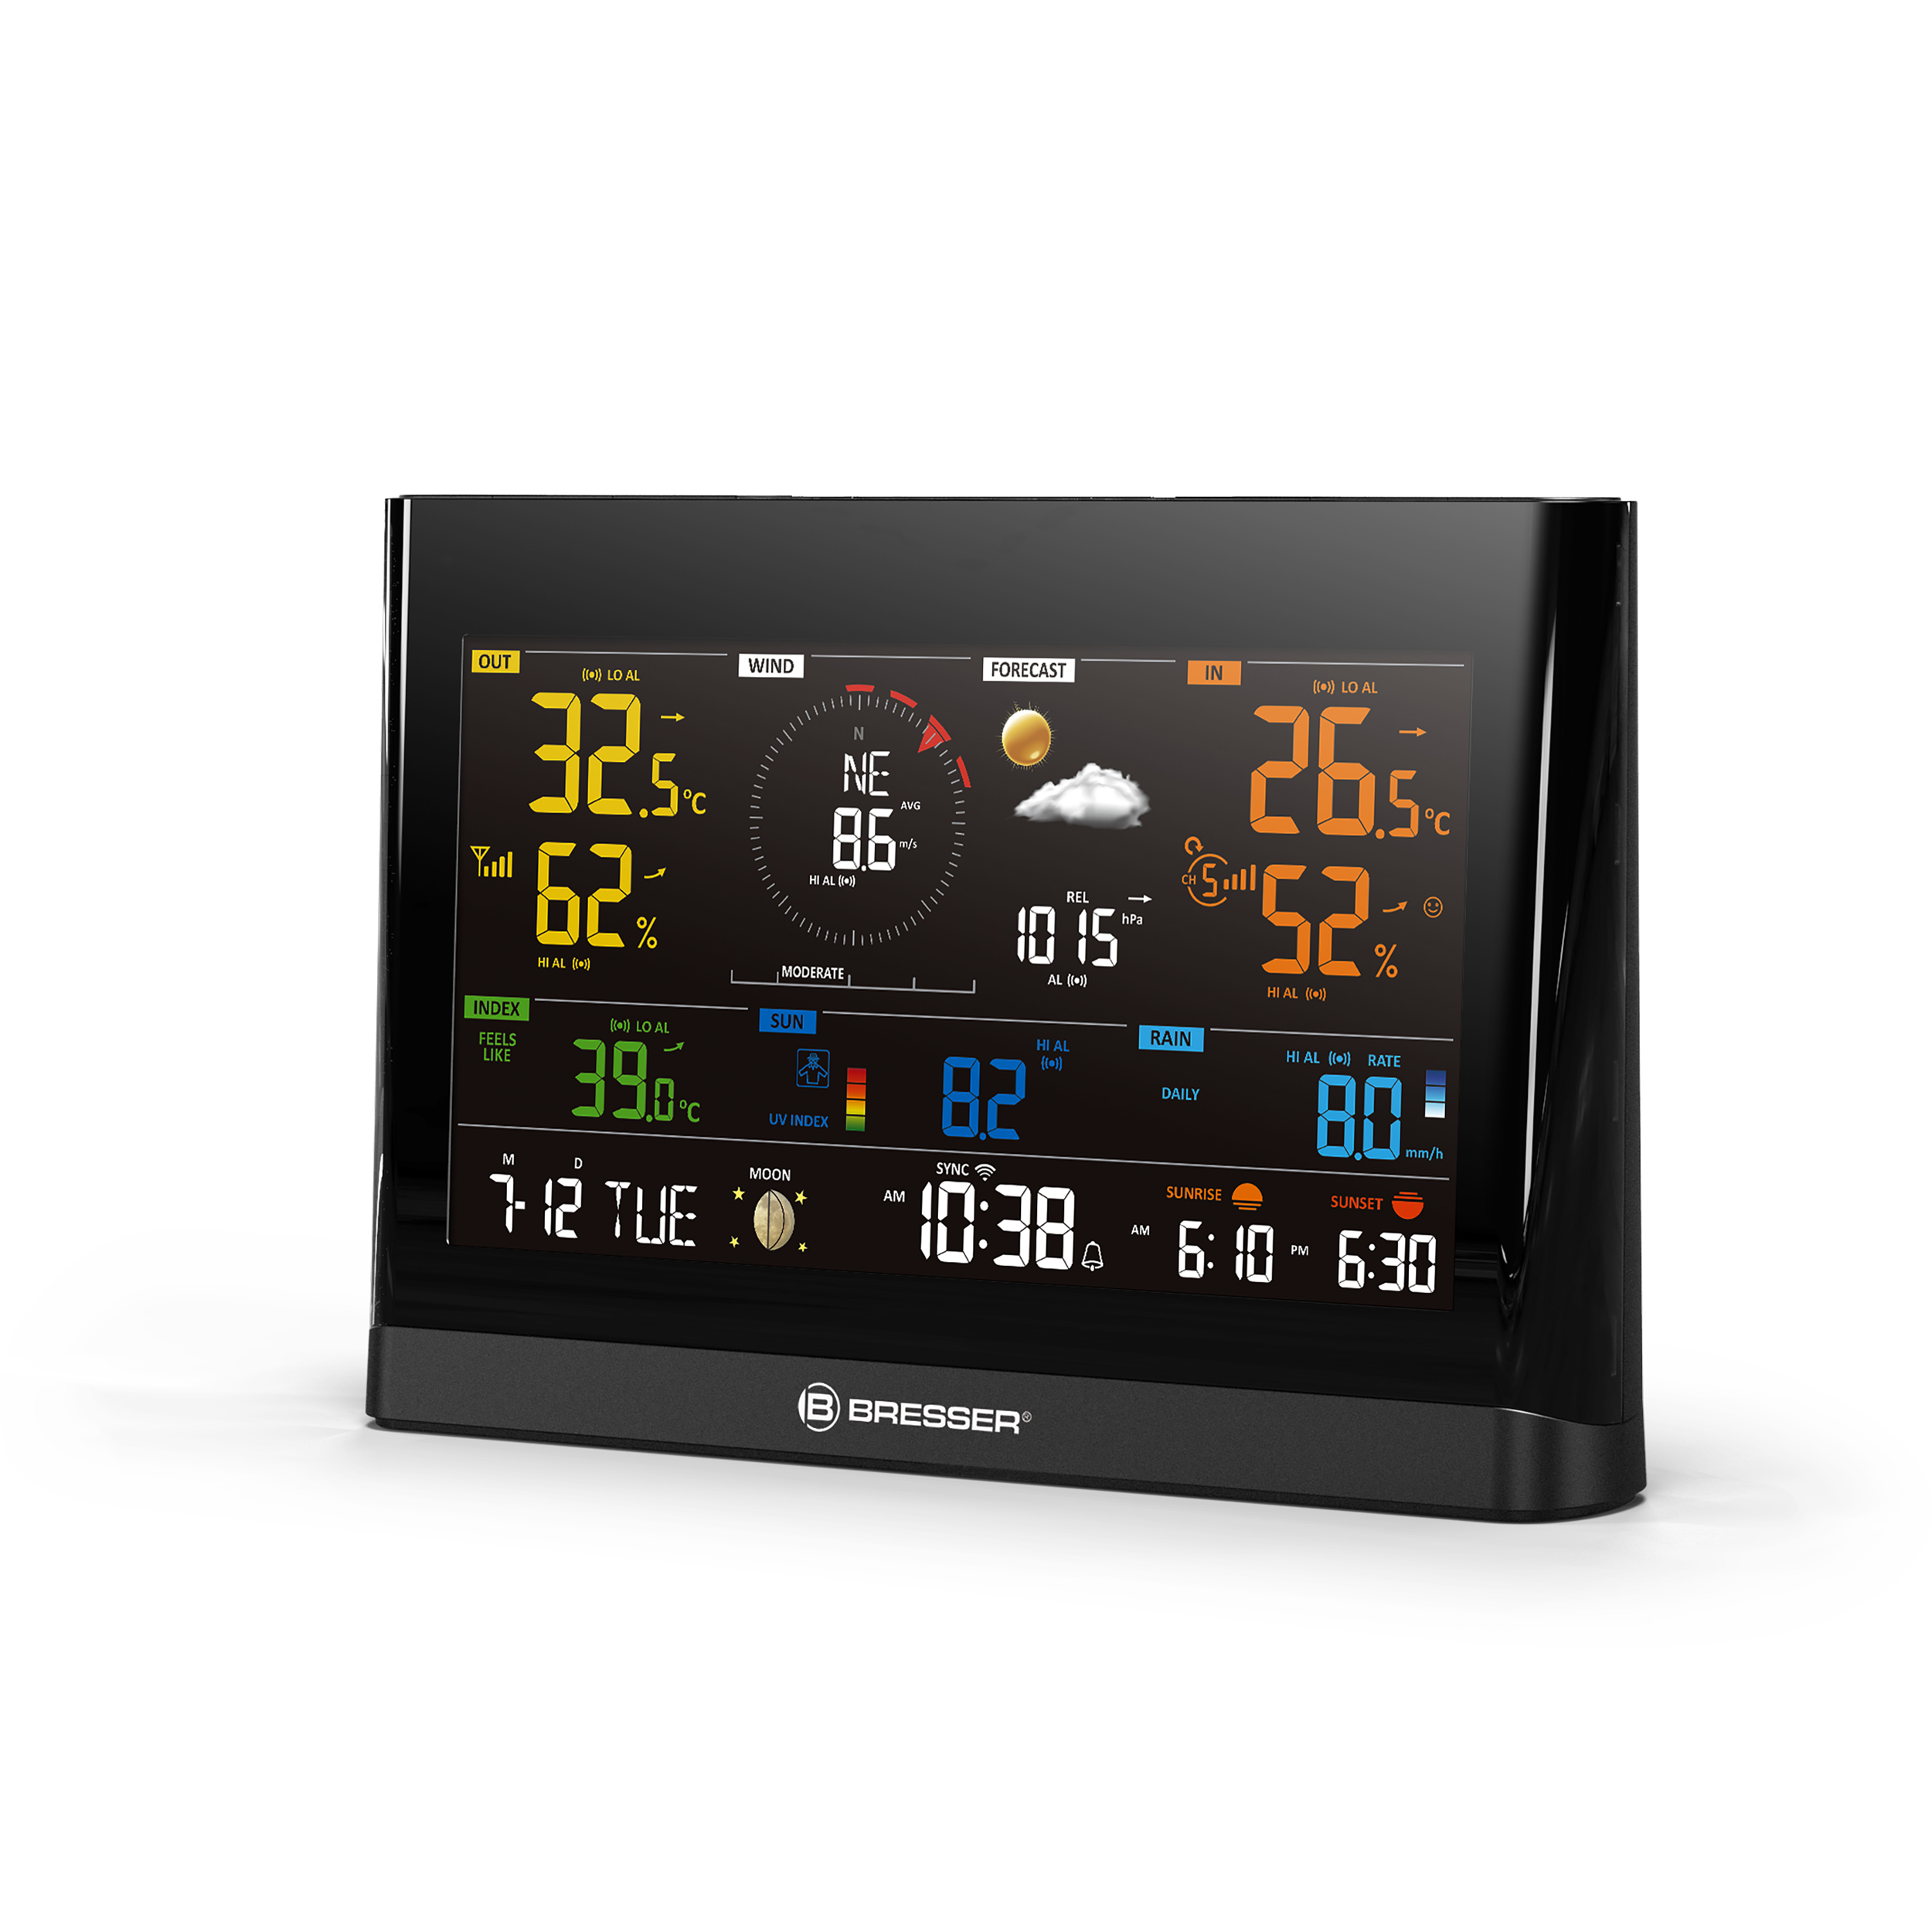 Centrale meteorologica WLAN Comfort BRESSER con sensore professionale 7 in 1 e moderno display a colori